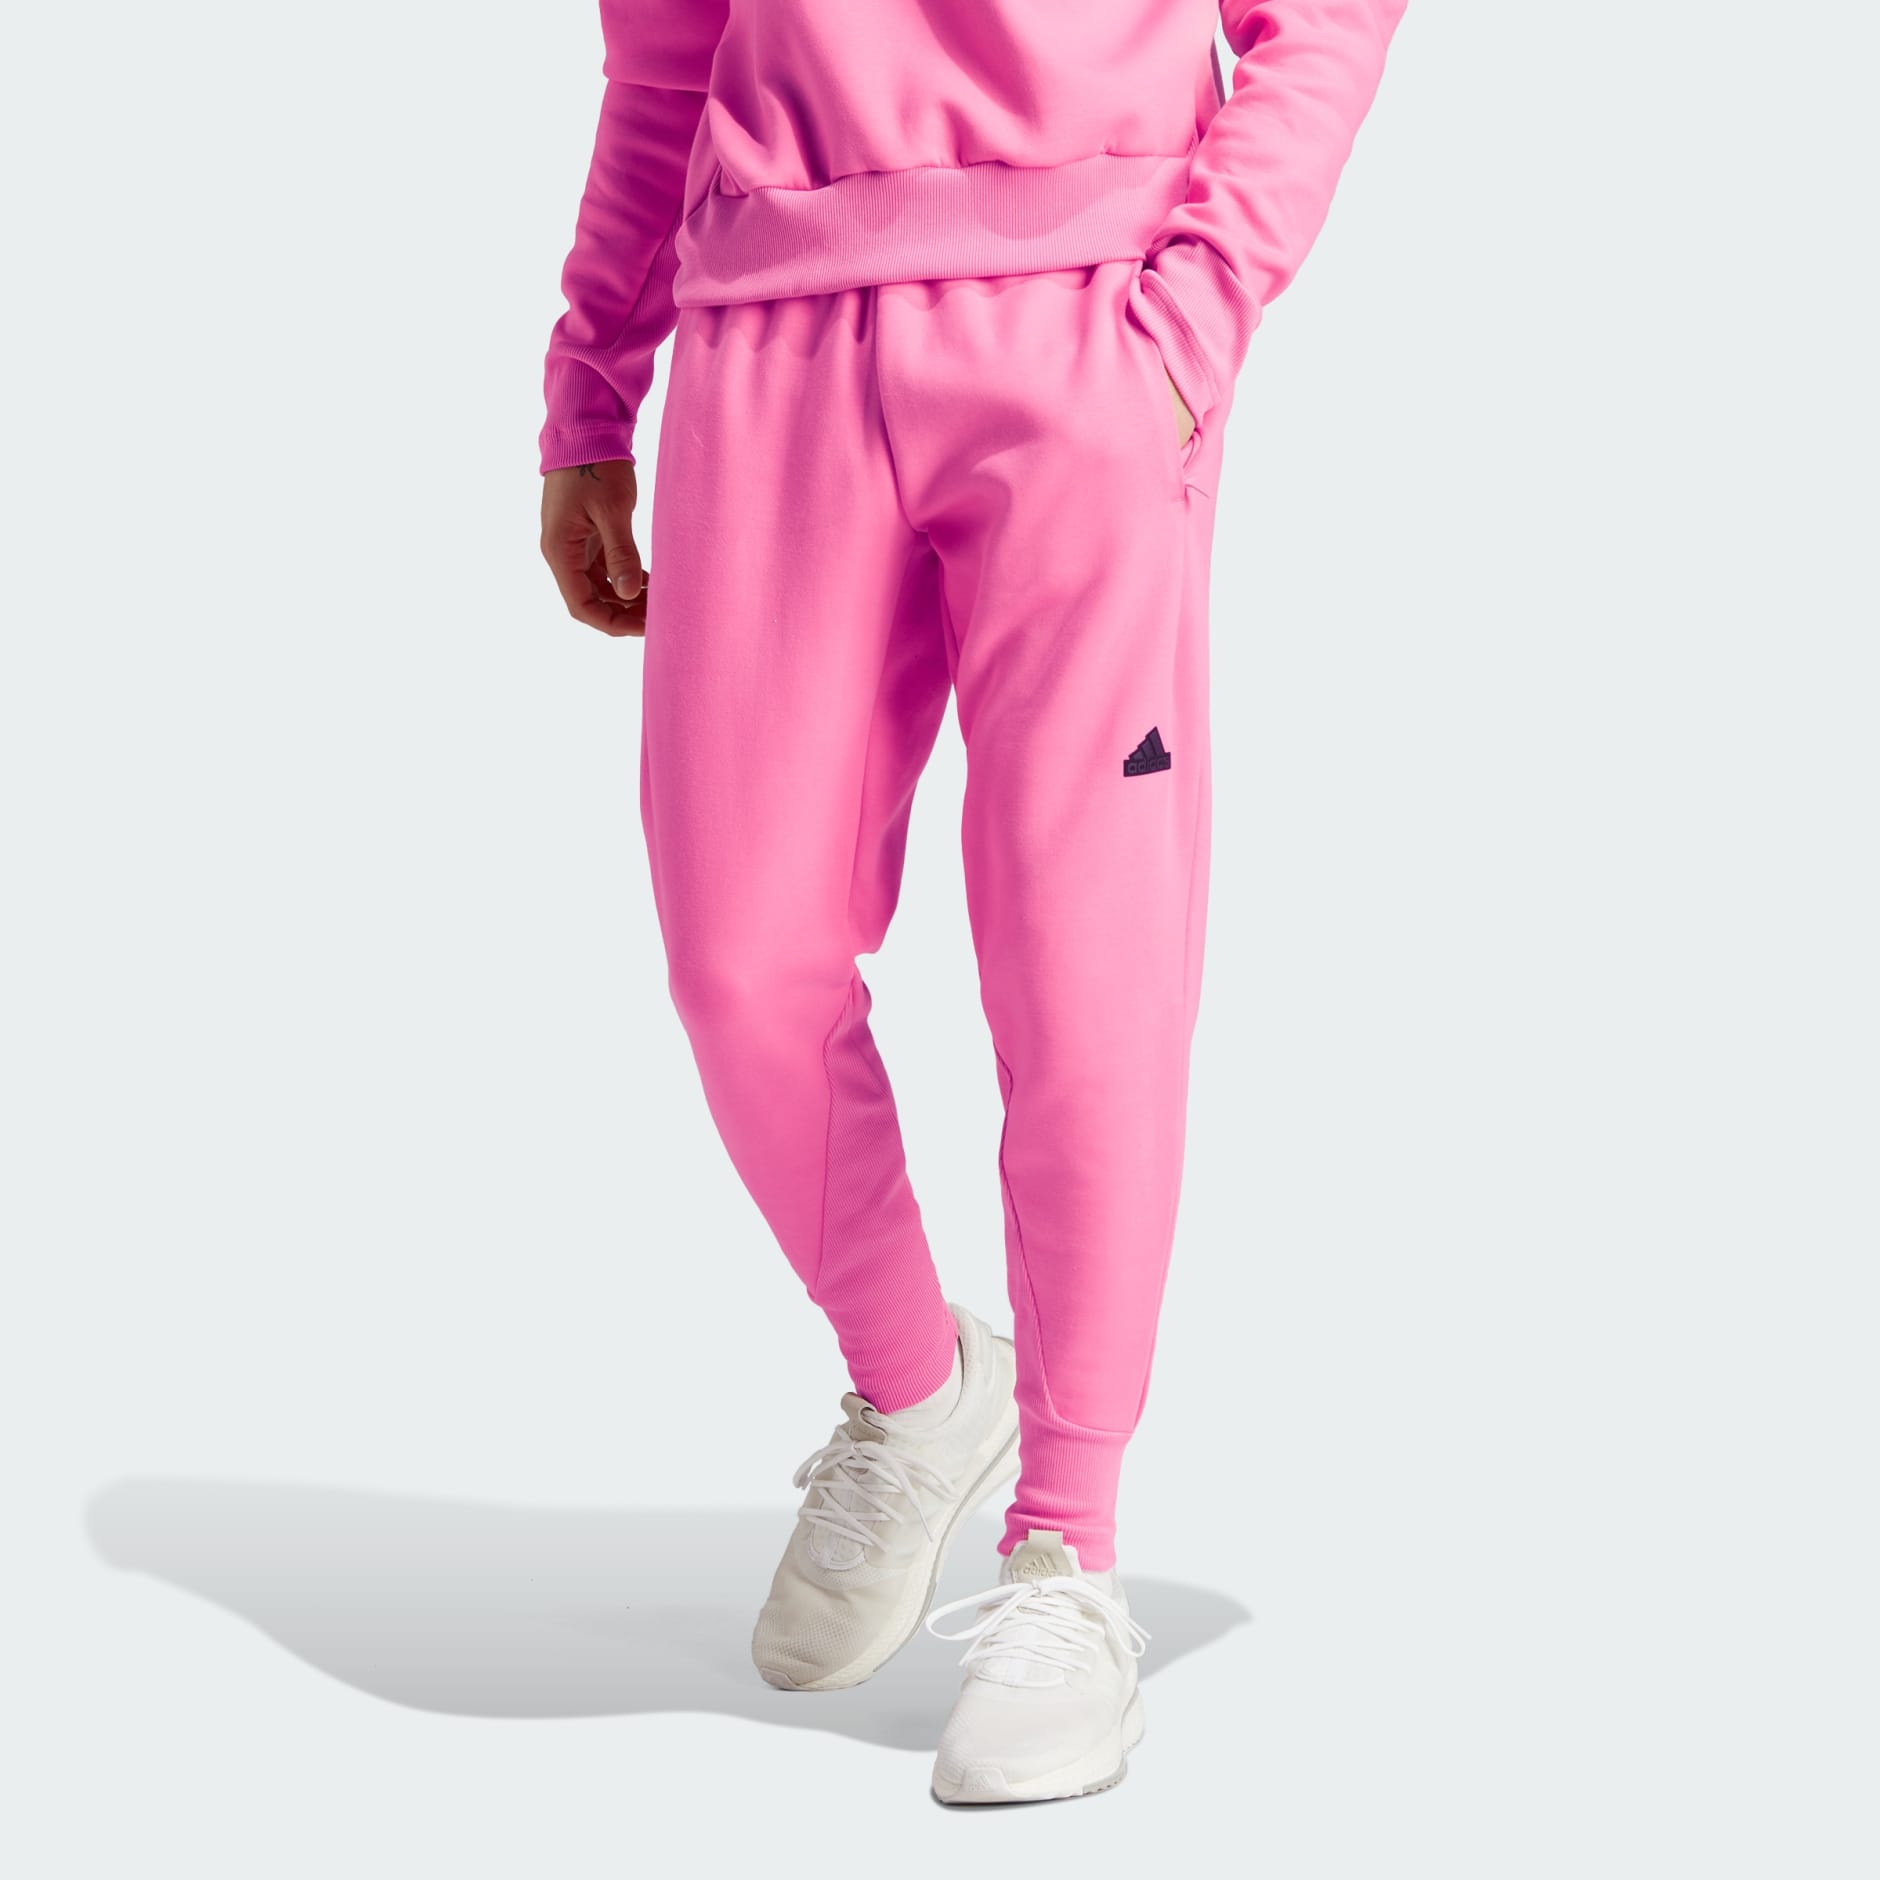 Women's adidas Tiro 7/8 Regular Fit High Rise Pants in Pink